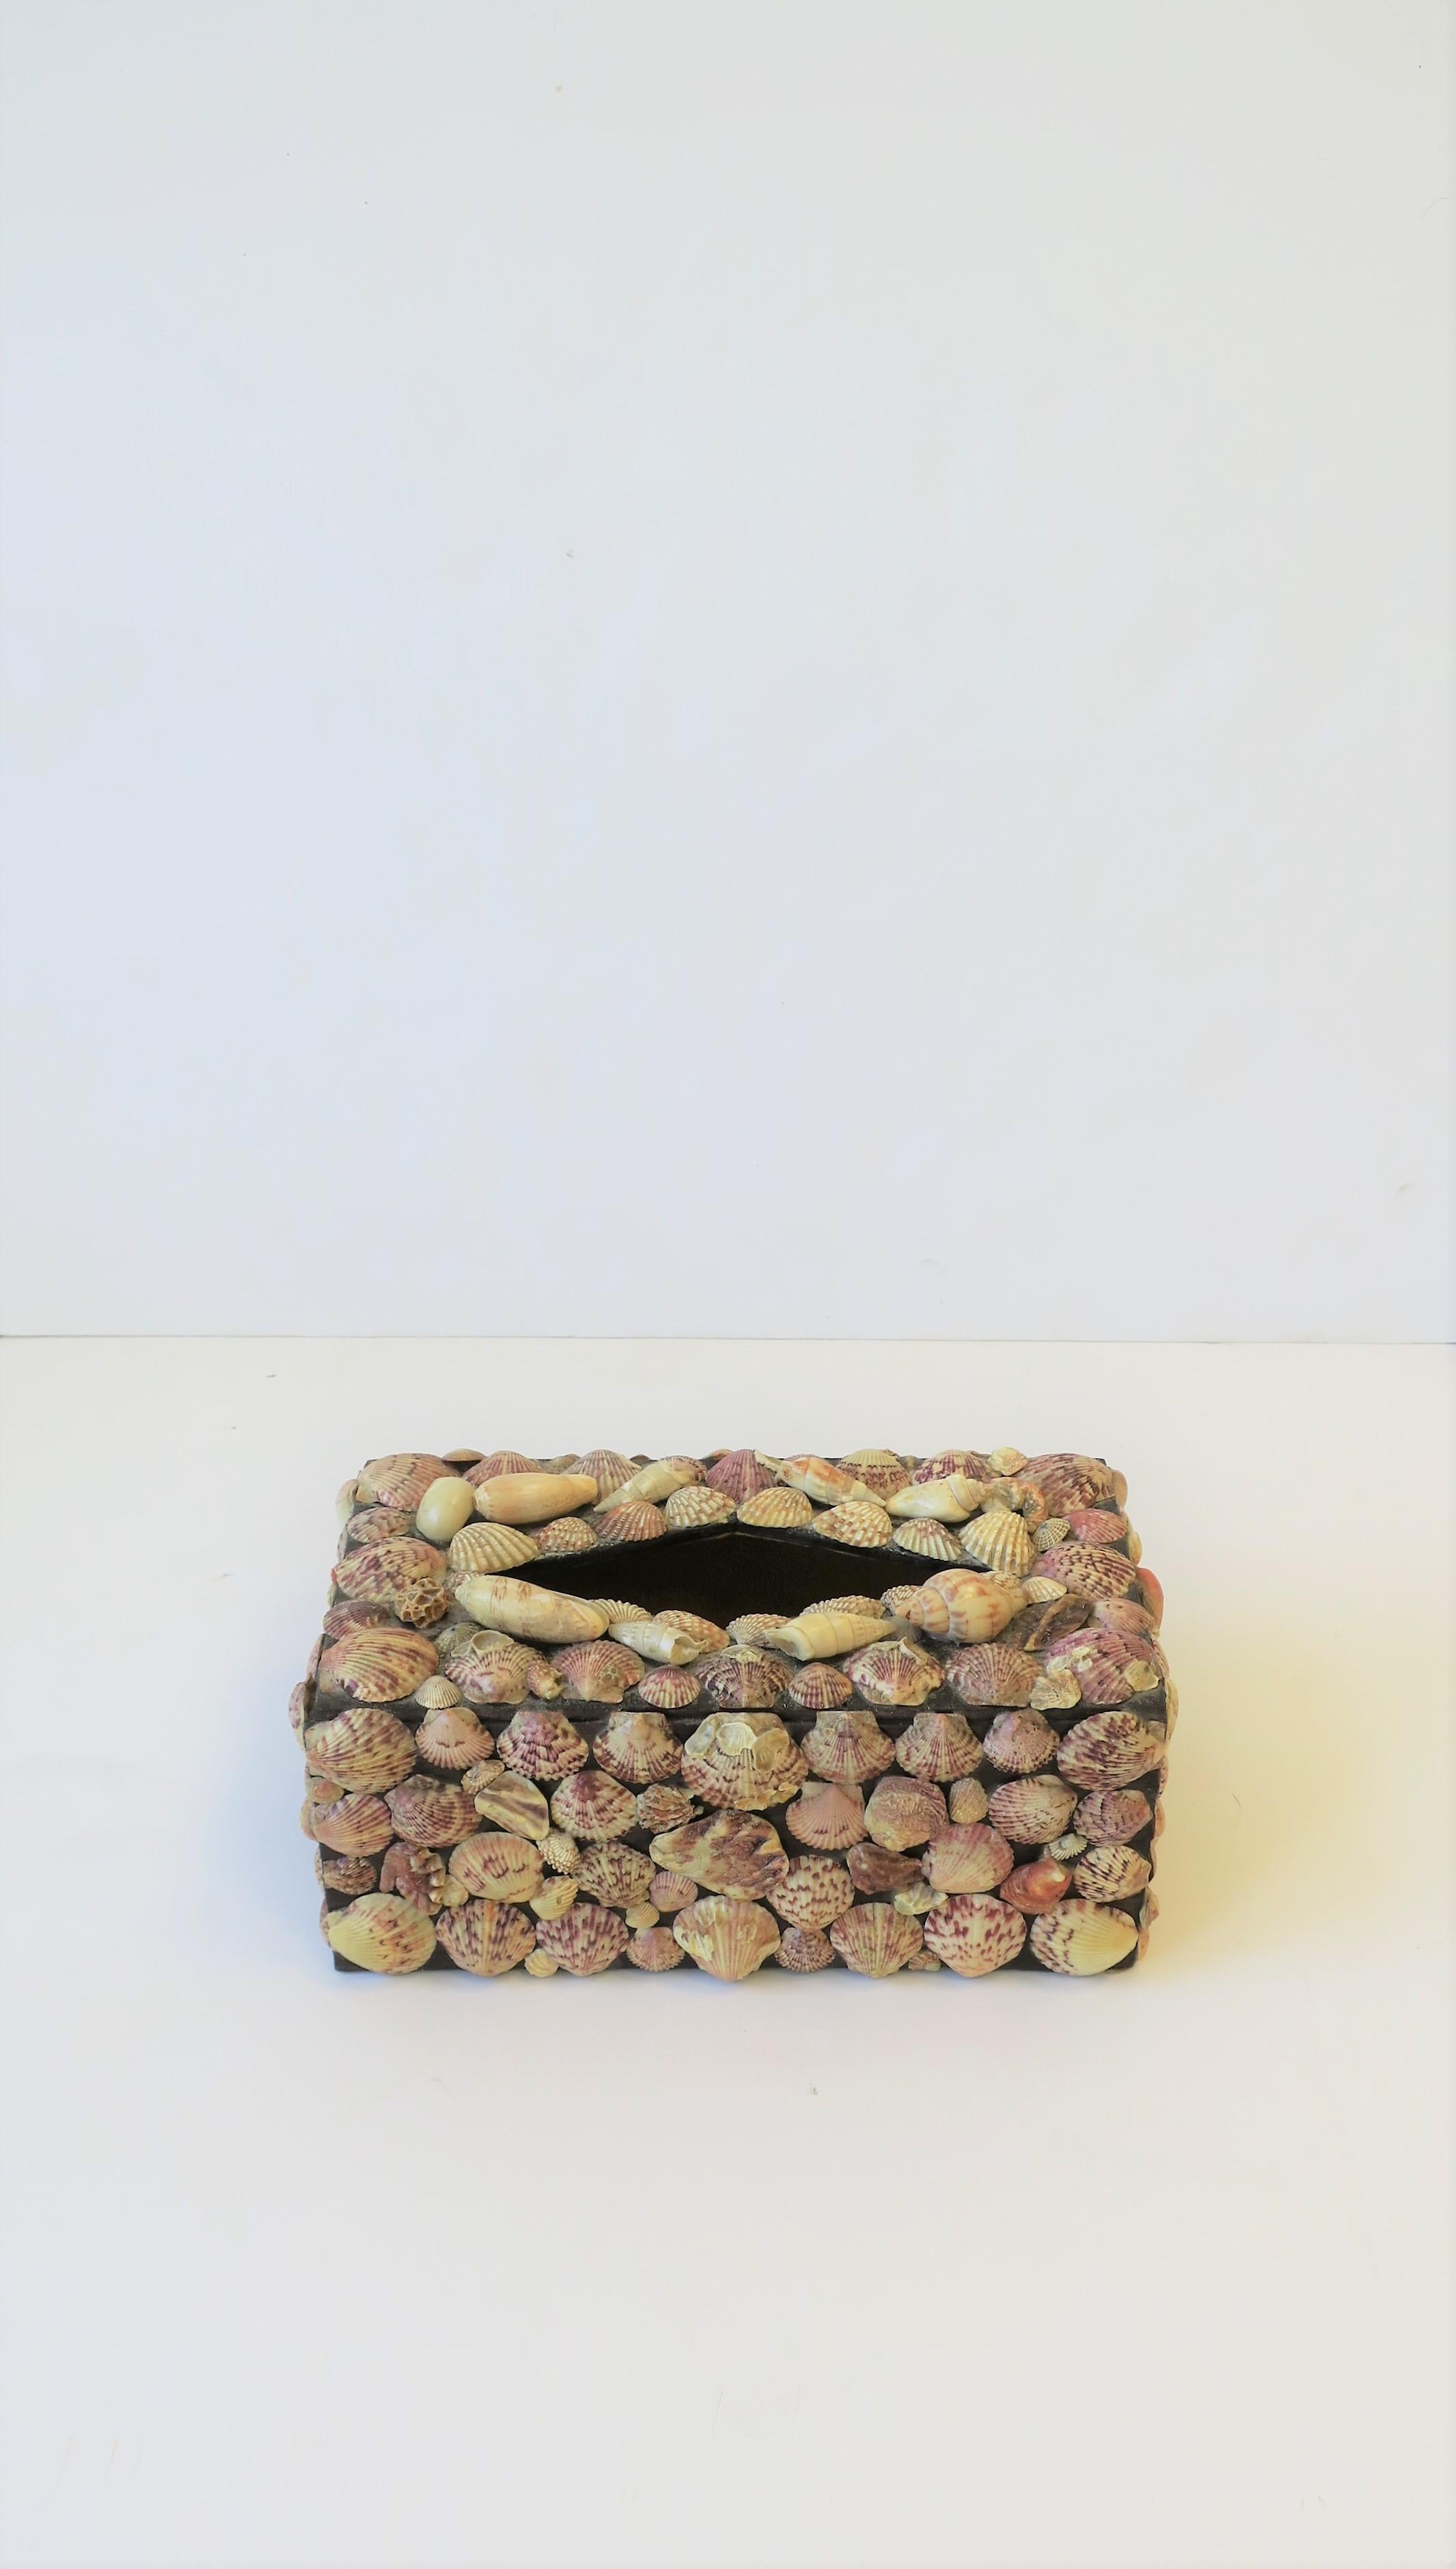 Eine sehr schöne Vintage Muschel [Seemuschel] Tissue-Box Halter Abdeckung, circa 1960er Jahre. Die Box ist aus Holz und mit Muscheln und anderen Muscheln bedeckt. Schöne Markenöffnung oben, siehe Bild #5. Ideal für ein Badezimmer, Eitelkeit Bereich,